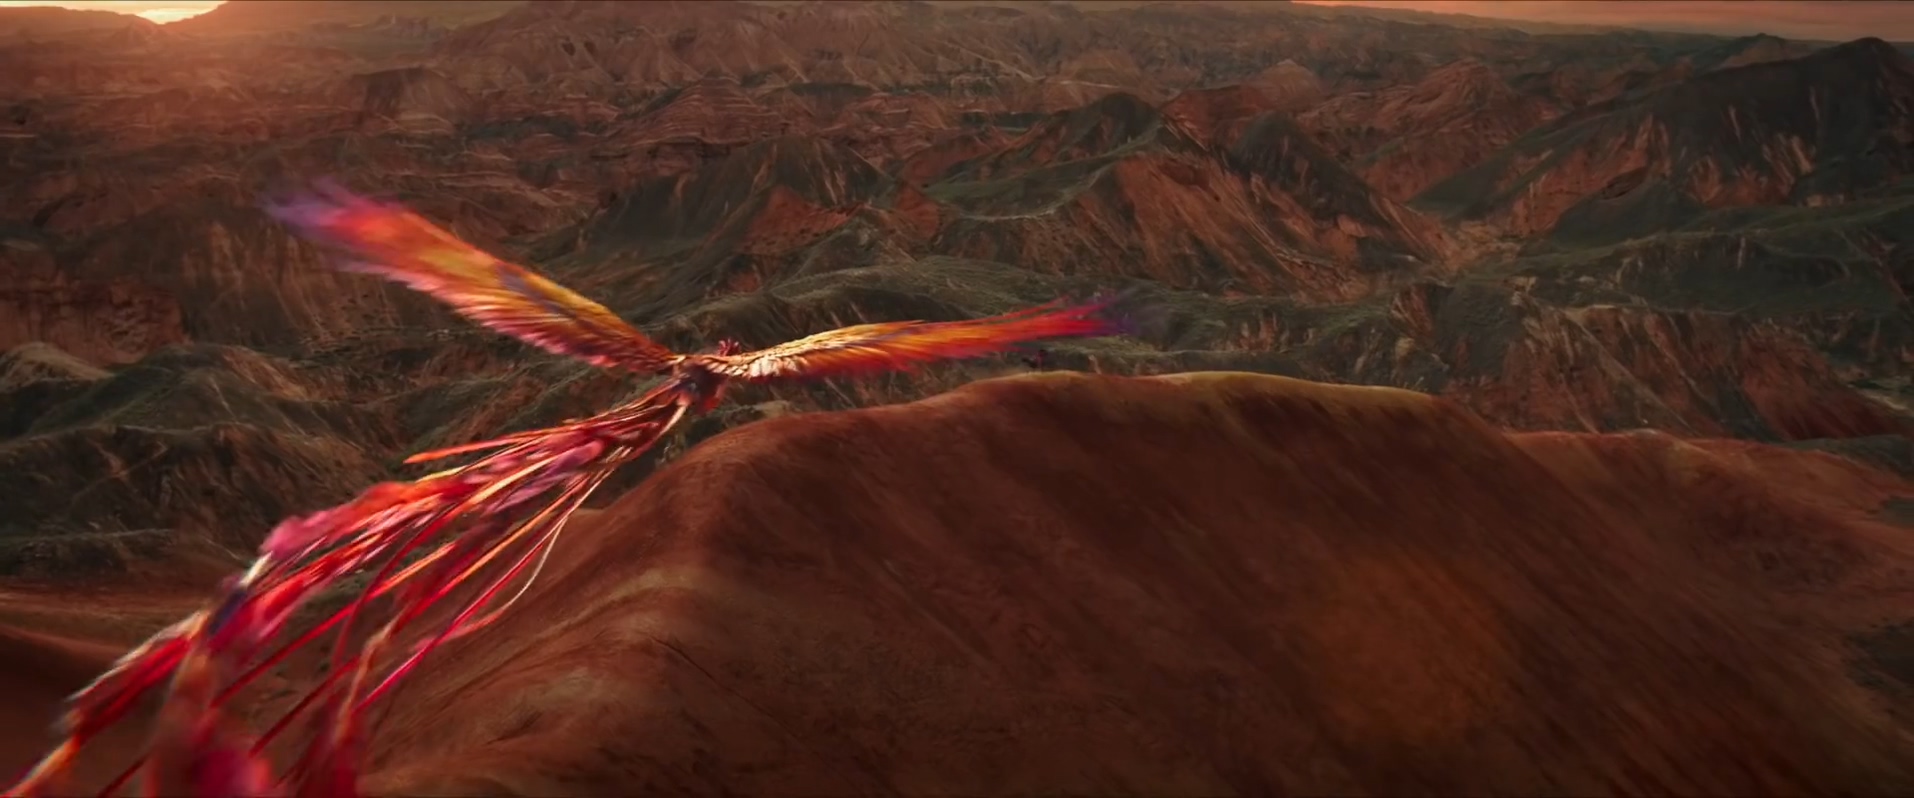 迪士尼《花木兰》战斗篇预告公开 凤凰飞过镜头